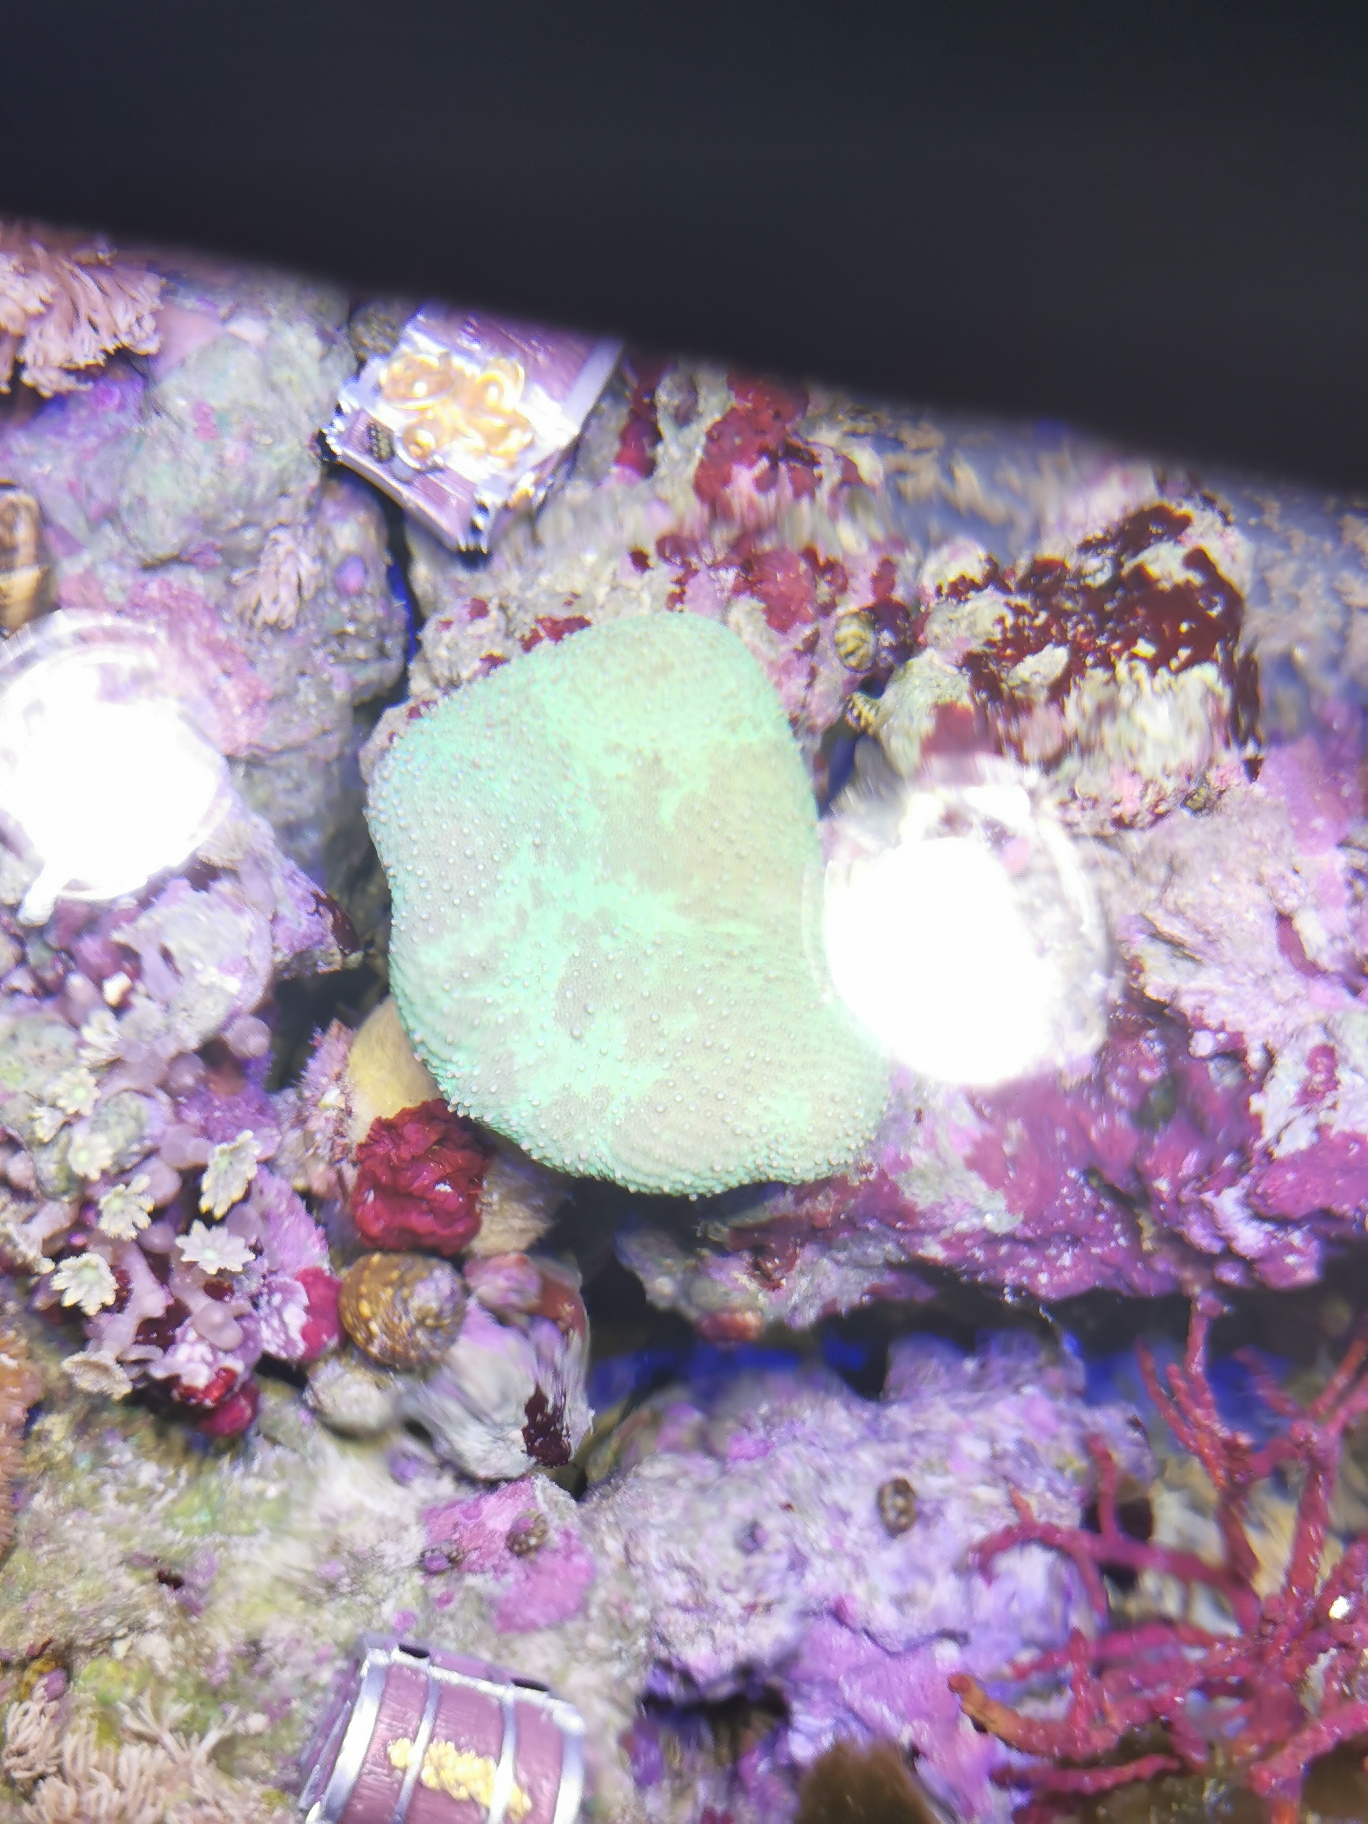 皮革珊瑚这两天突然不开了怎么回事水质光照一直都挺正常的其他珊瑚都开的挺好